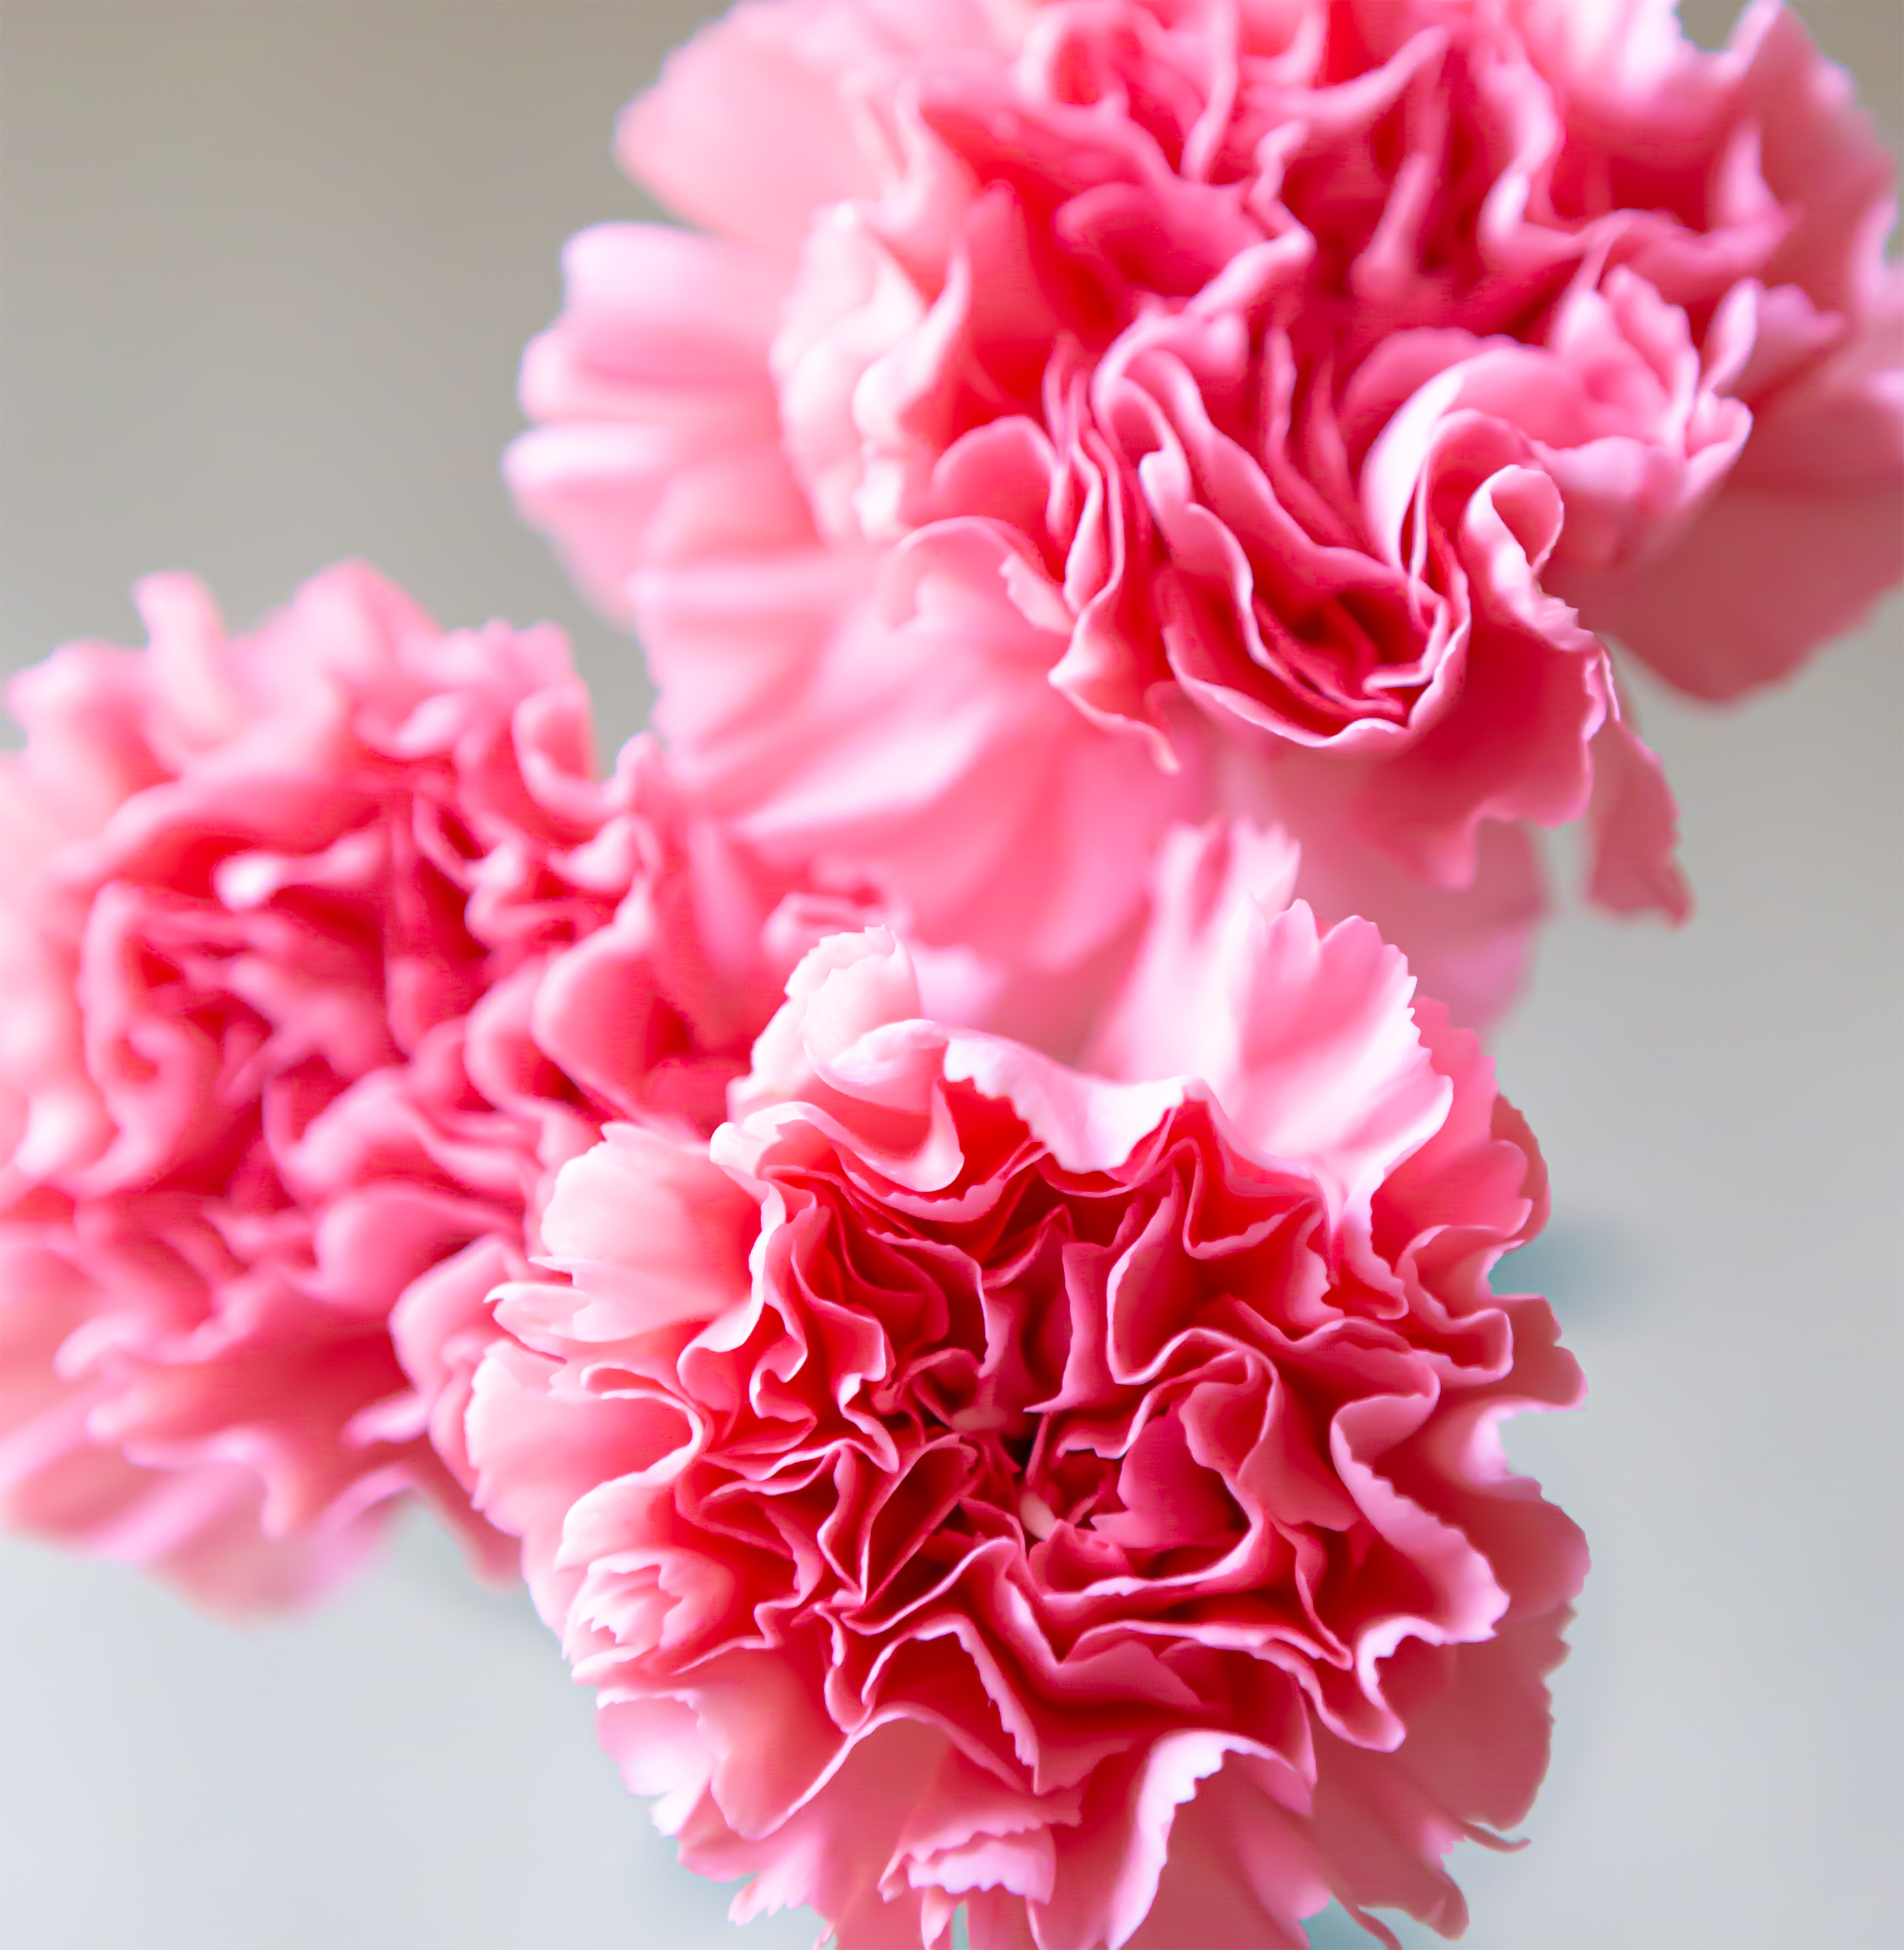 カーネーションの花びら02 無料の高画質フリー写真素材 イメージズラボ